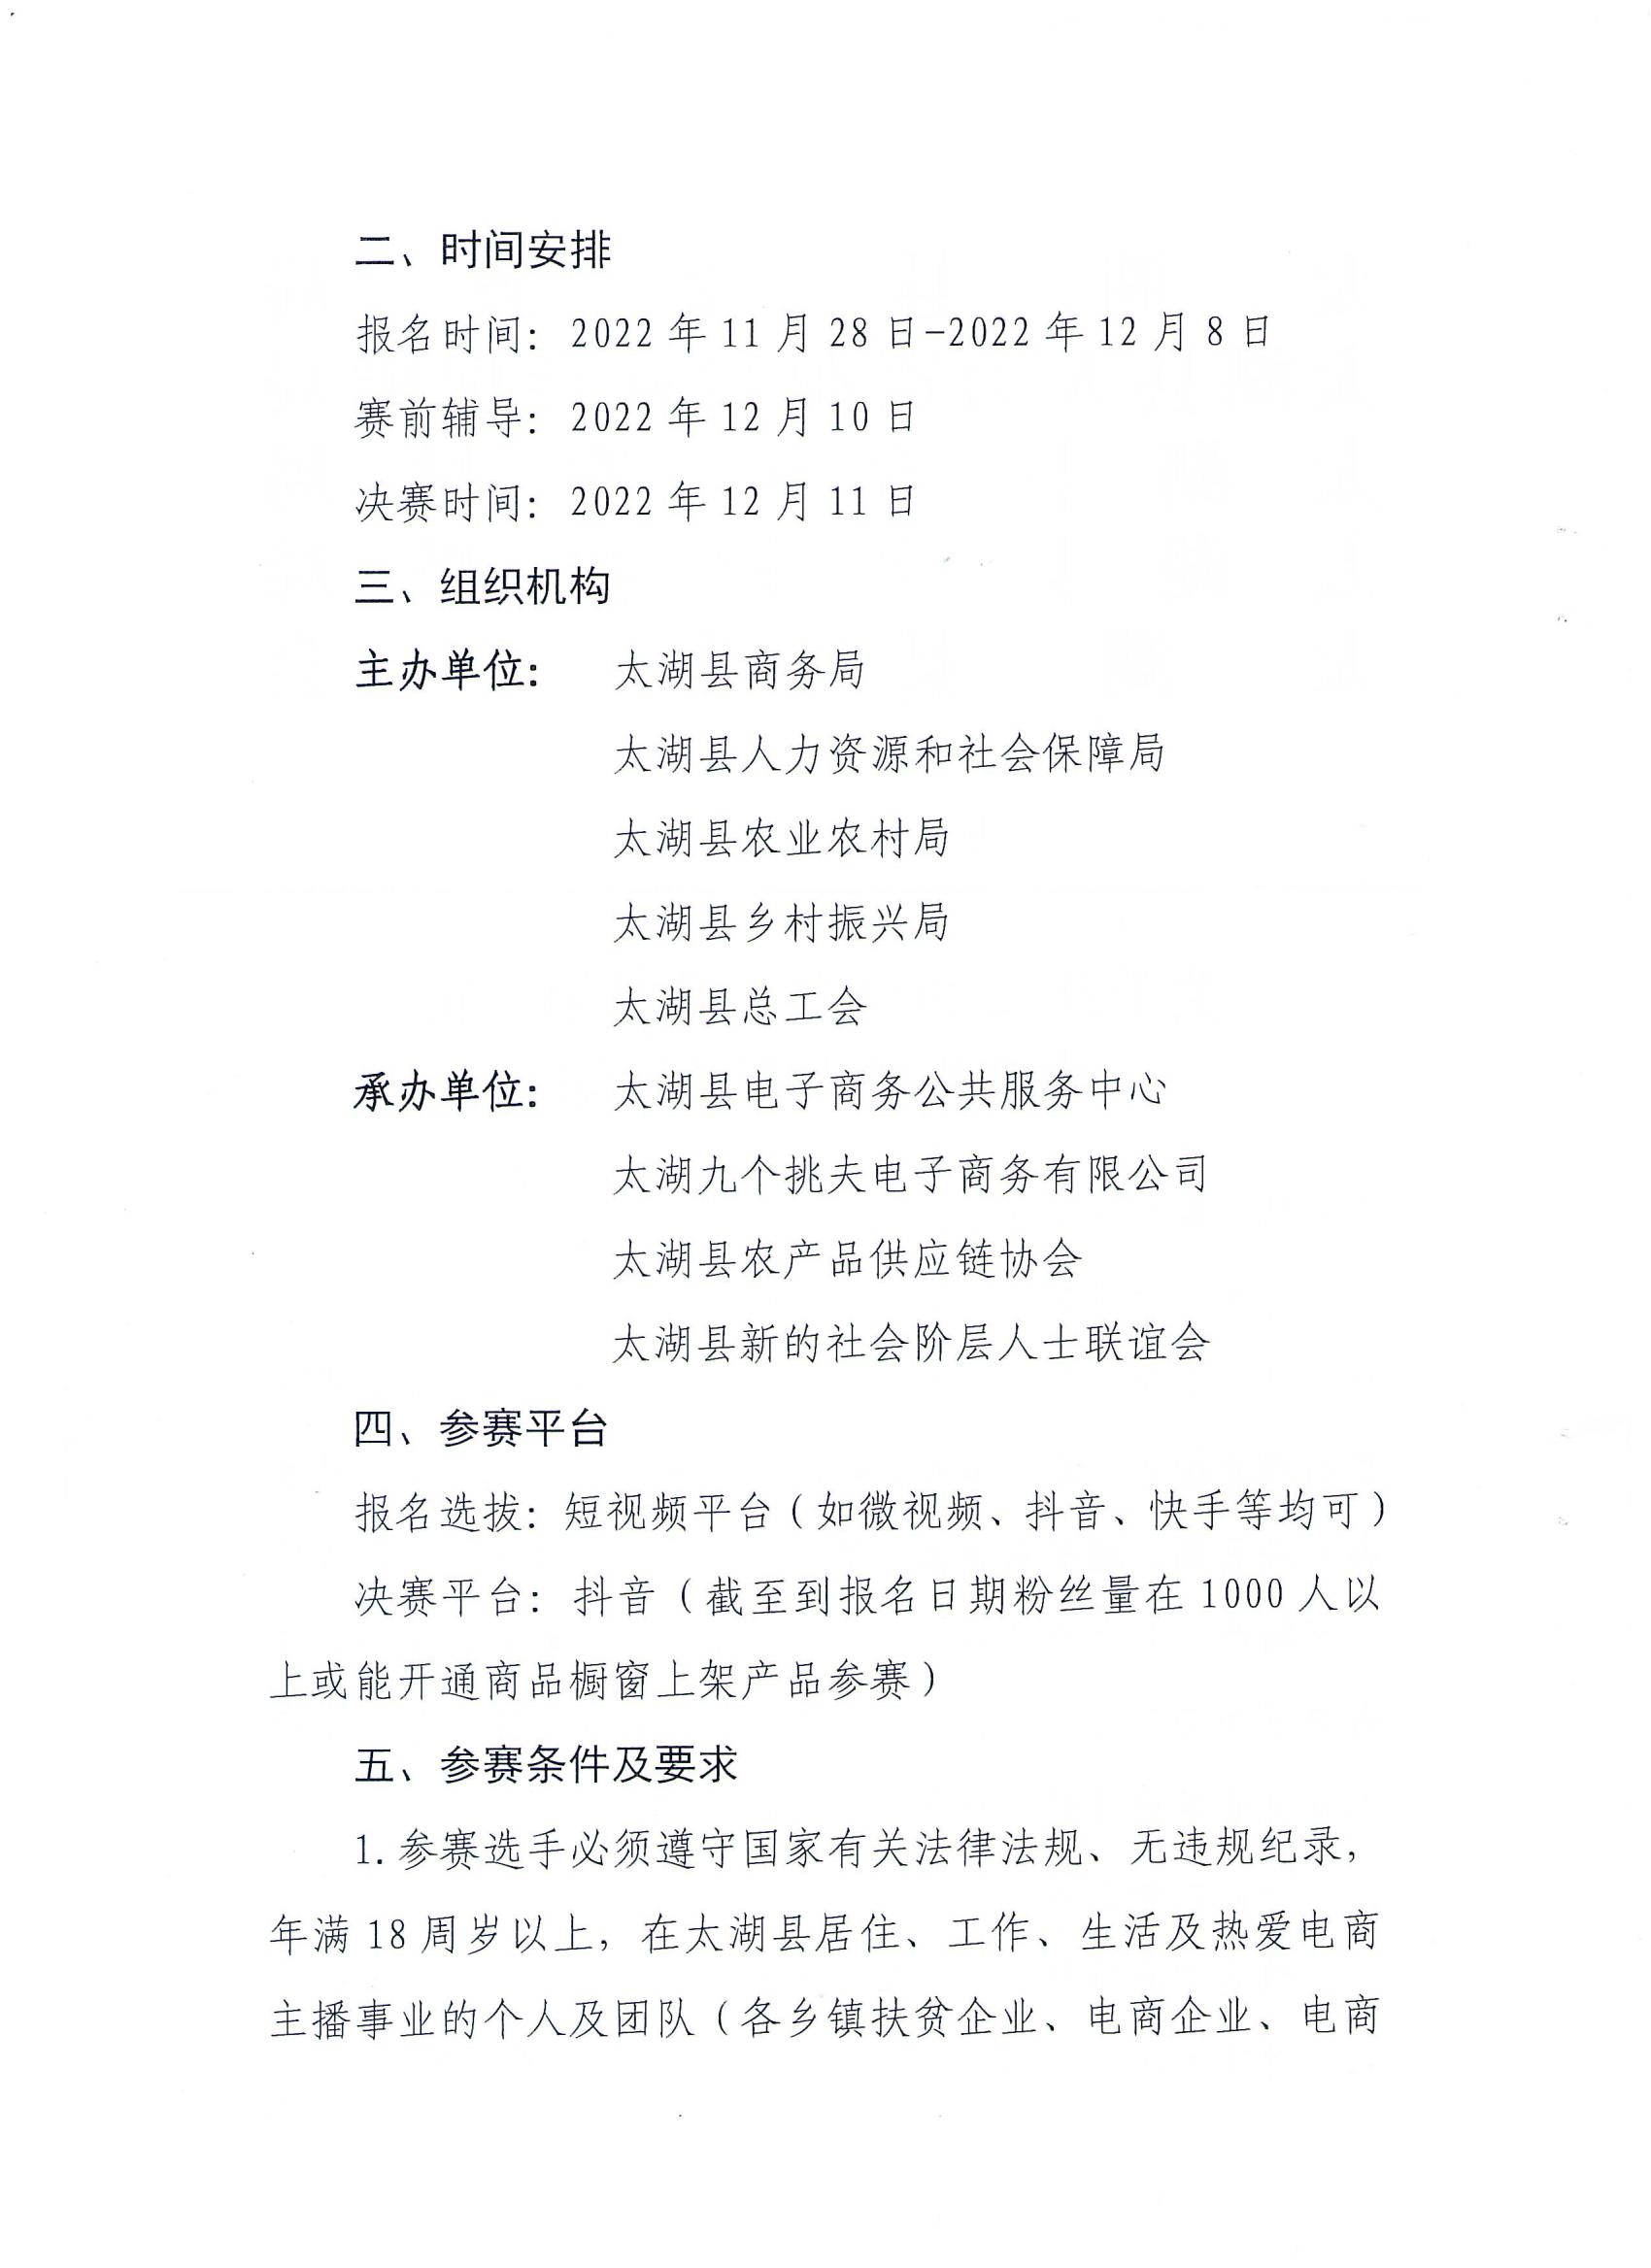 关于开展2022年太湖县第二届电商直播大赛的通知(1)_01.jpg